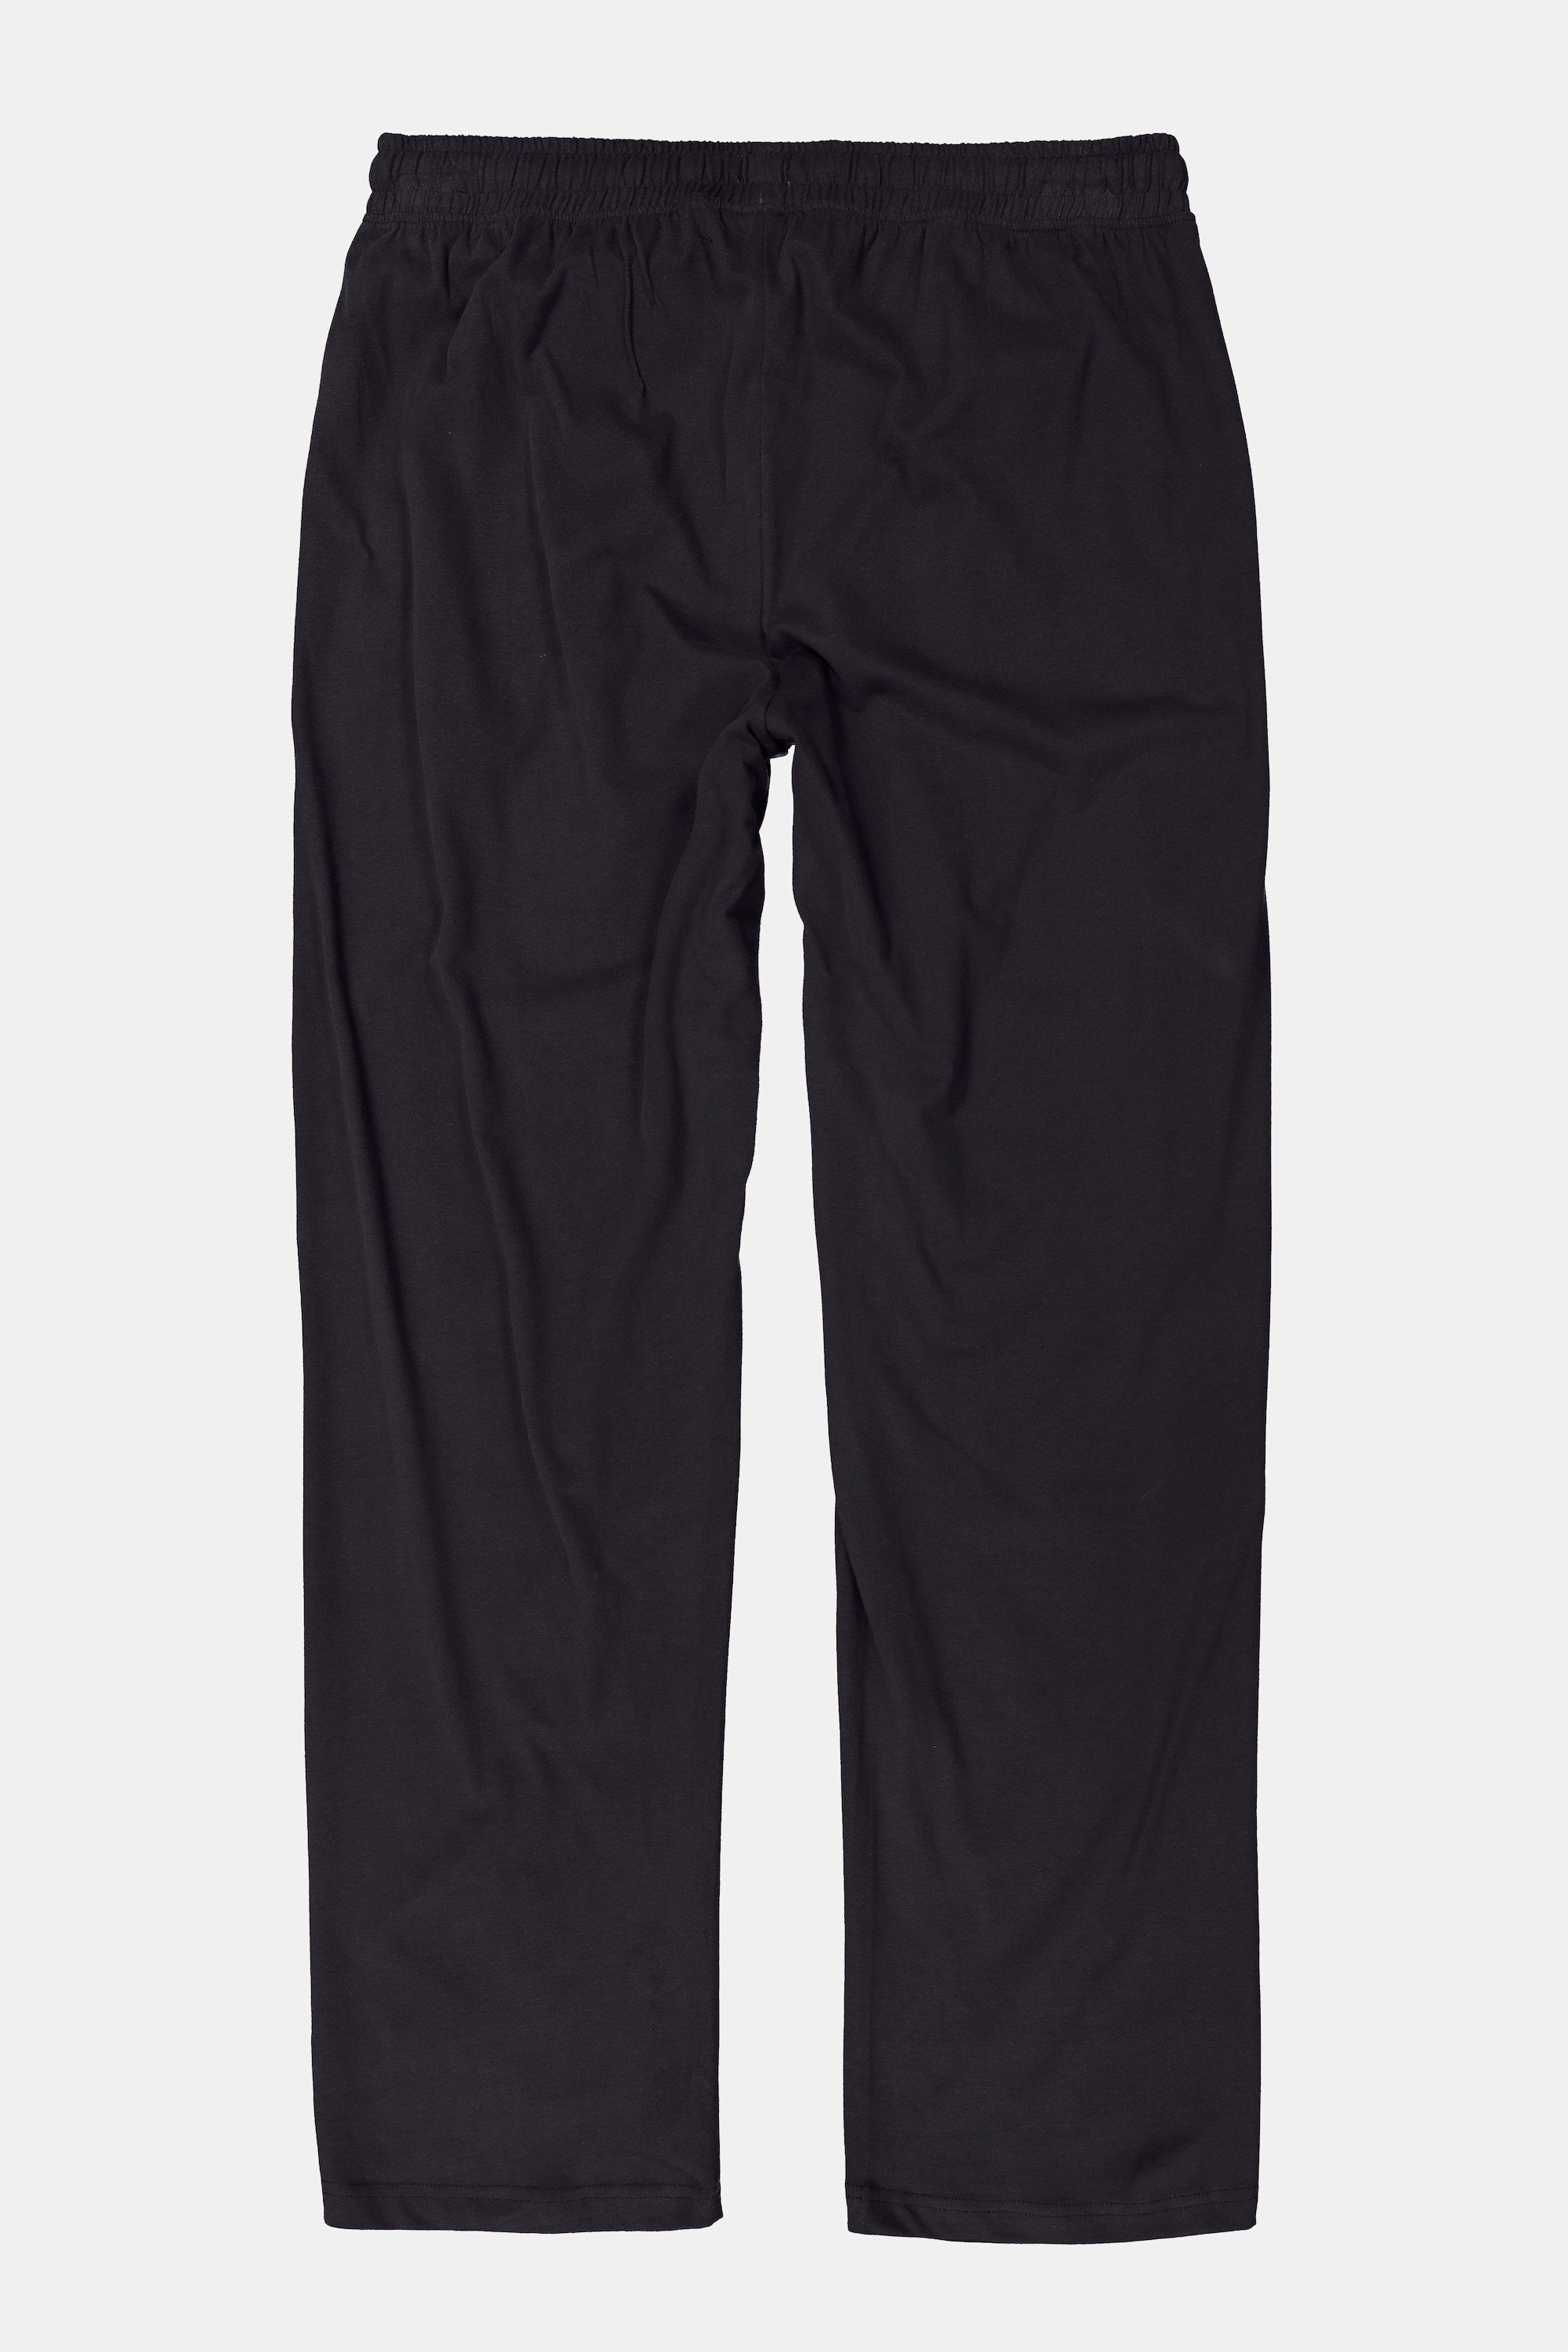 Schlafanzug-Hose JP1880 Elastikbund Homewear lange Schlafanzug schwarz Form